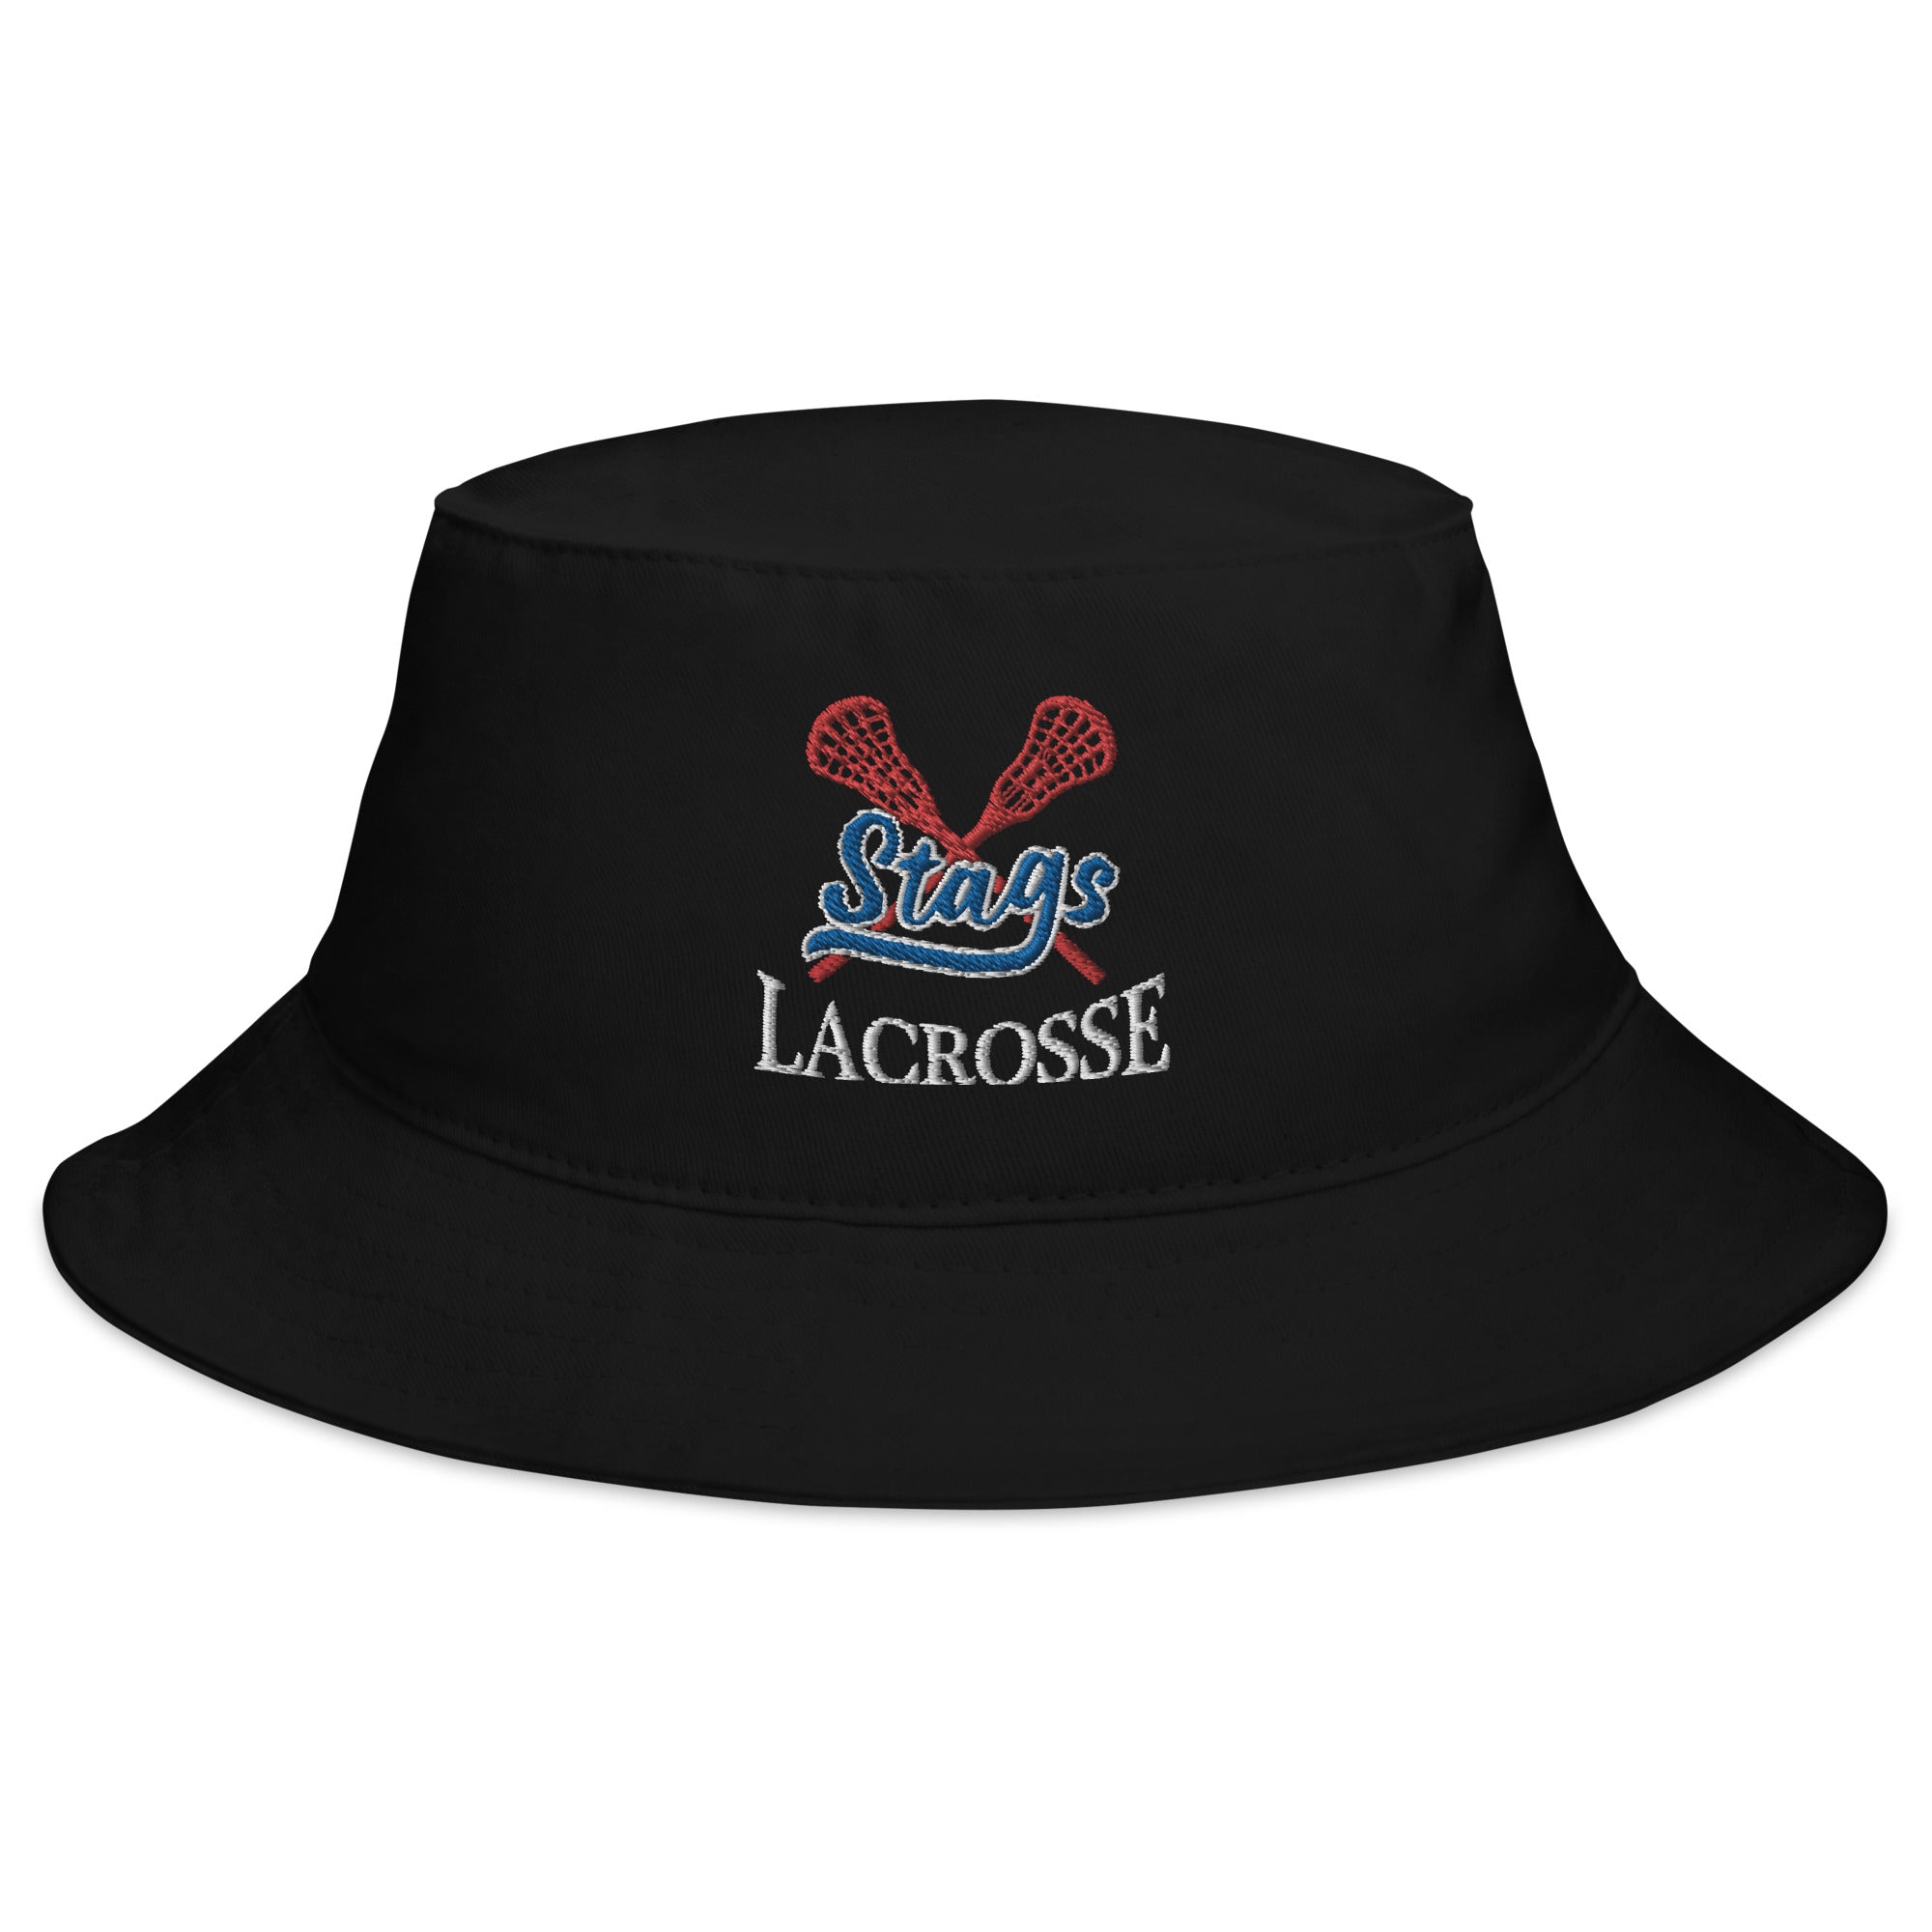 Stags Lacrosse Bucket Hat